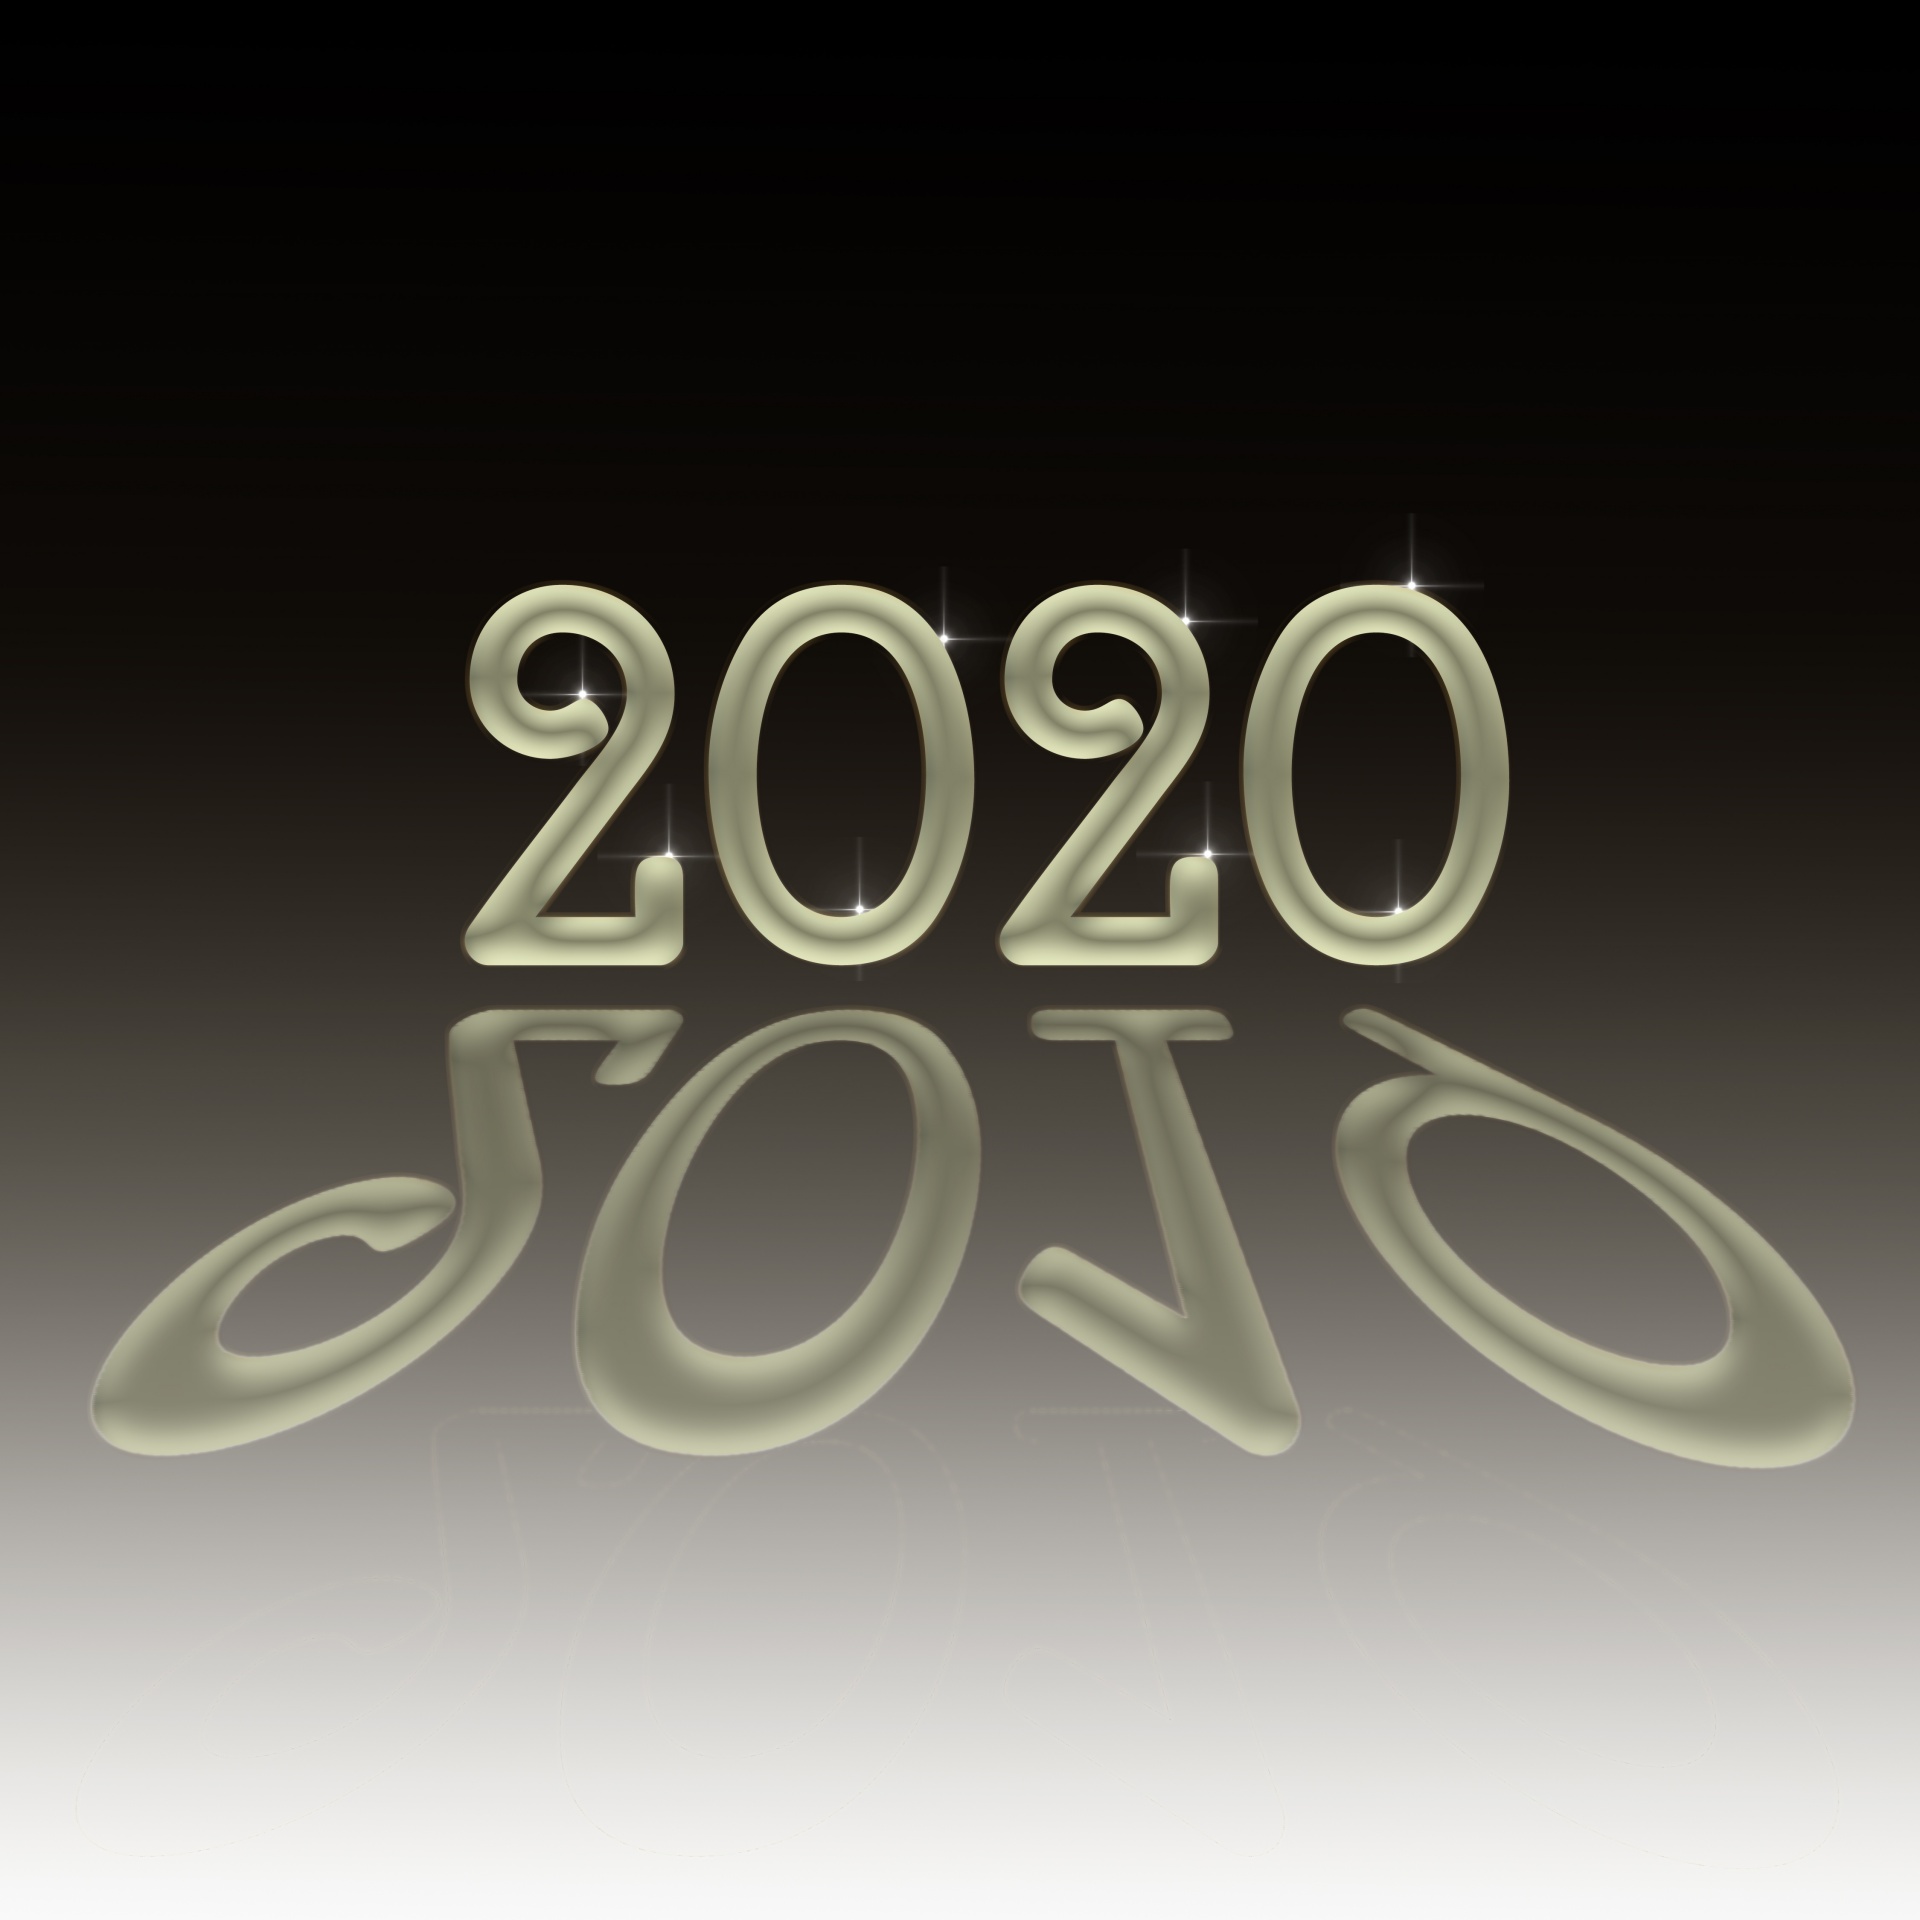 Goodbye 2019 Hello 2020